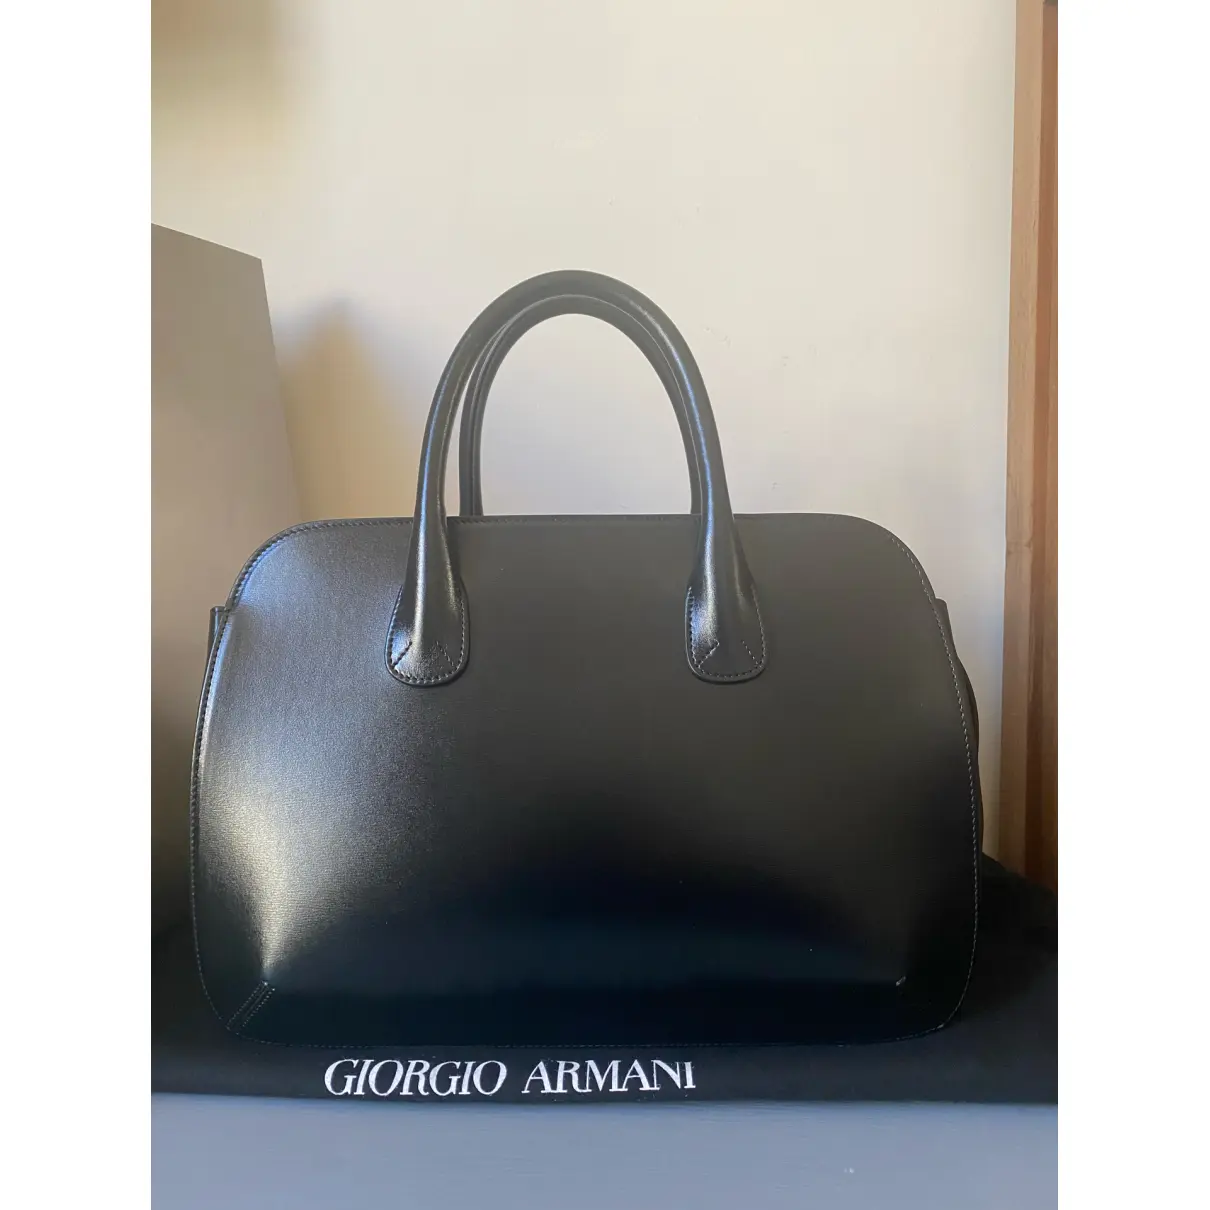 Buy Giorgio Armani Leather tote online